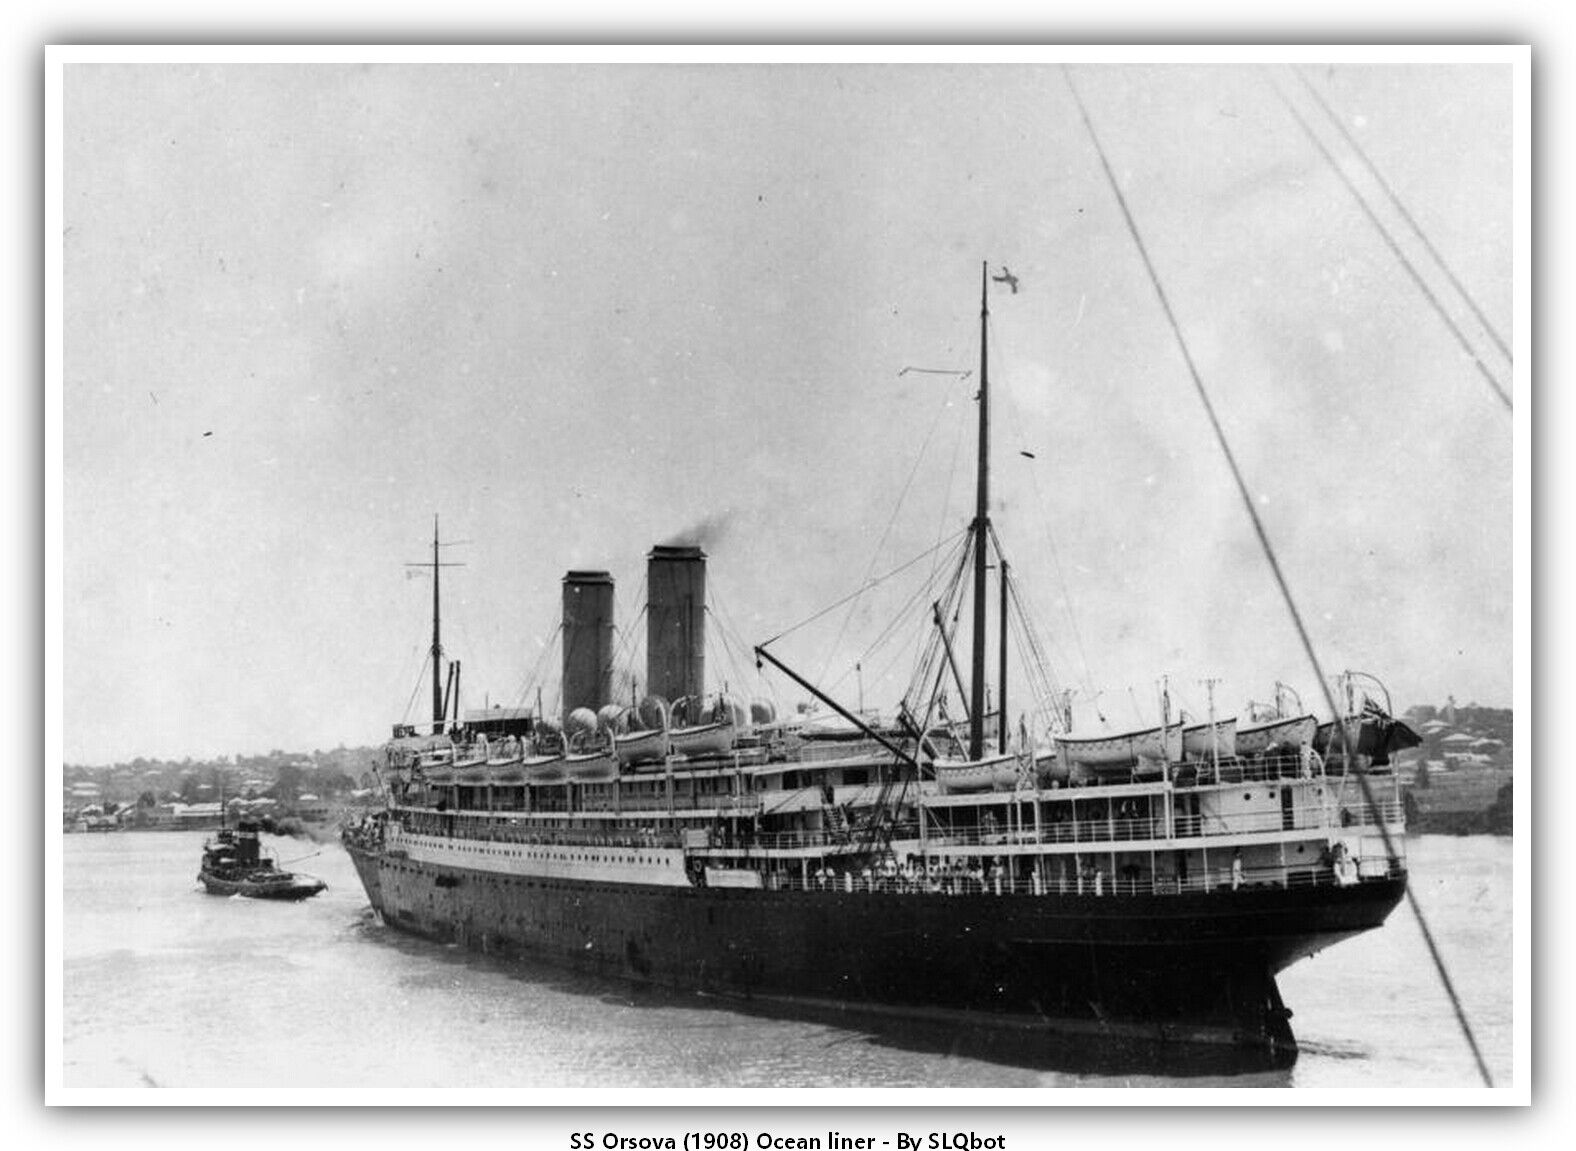 SS Orsova (1908) Ocean liner